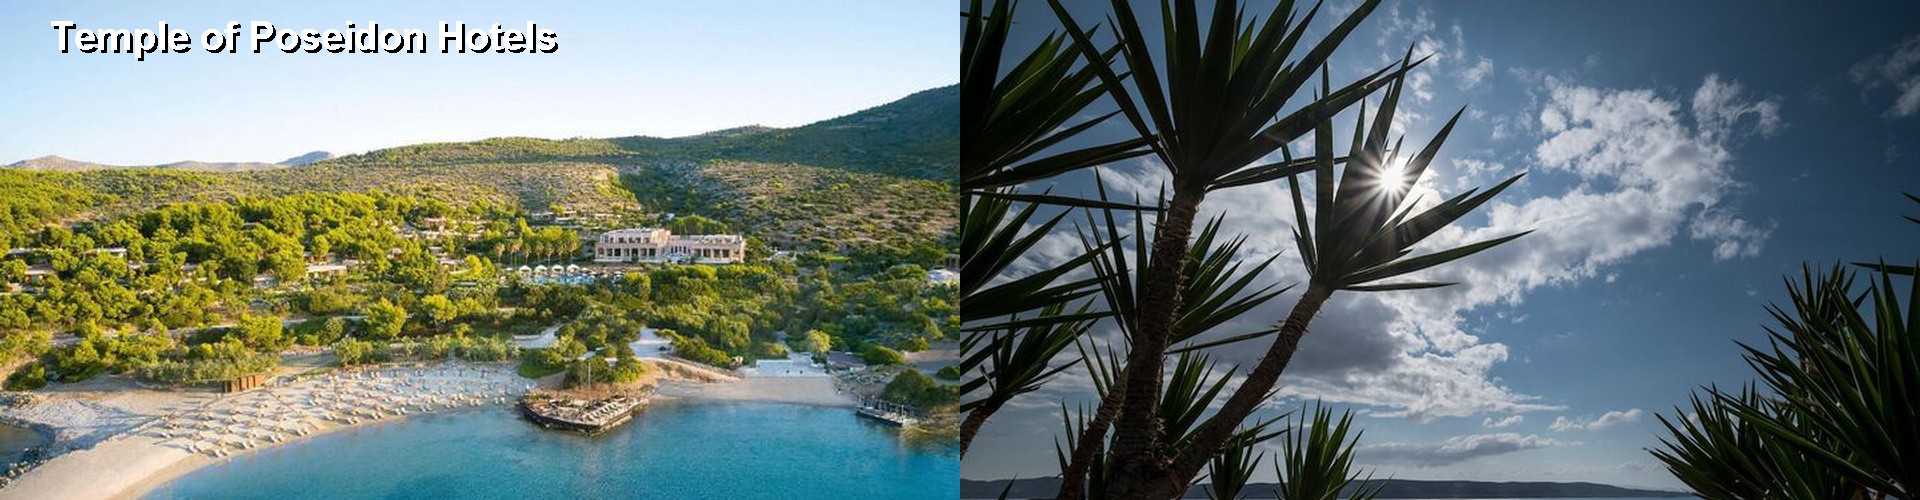 5 Best Hotels near Temple of Poseidon